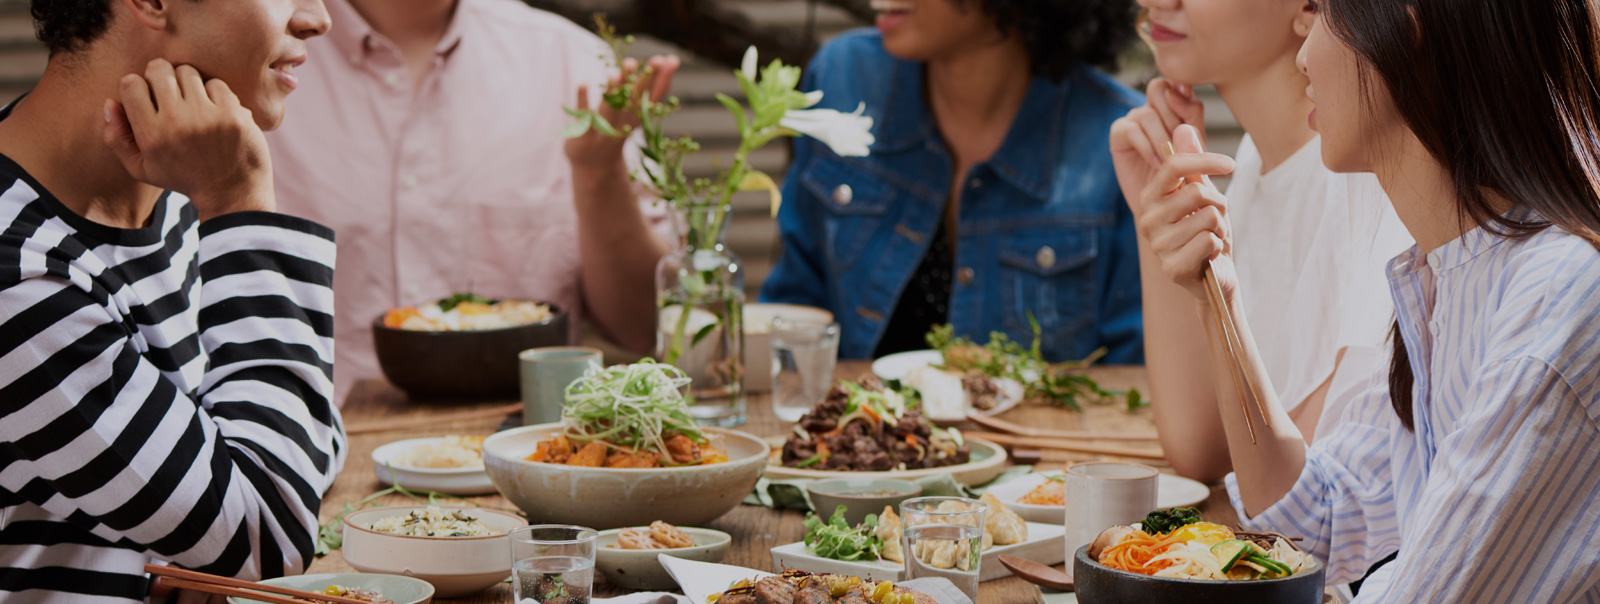 坐在与韩国食物的桌子附近的各种各样的国籍的人的图象